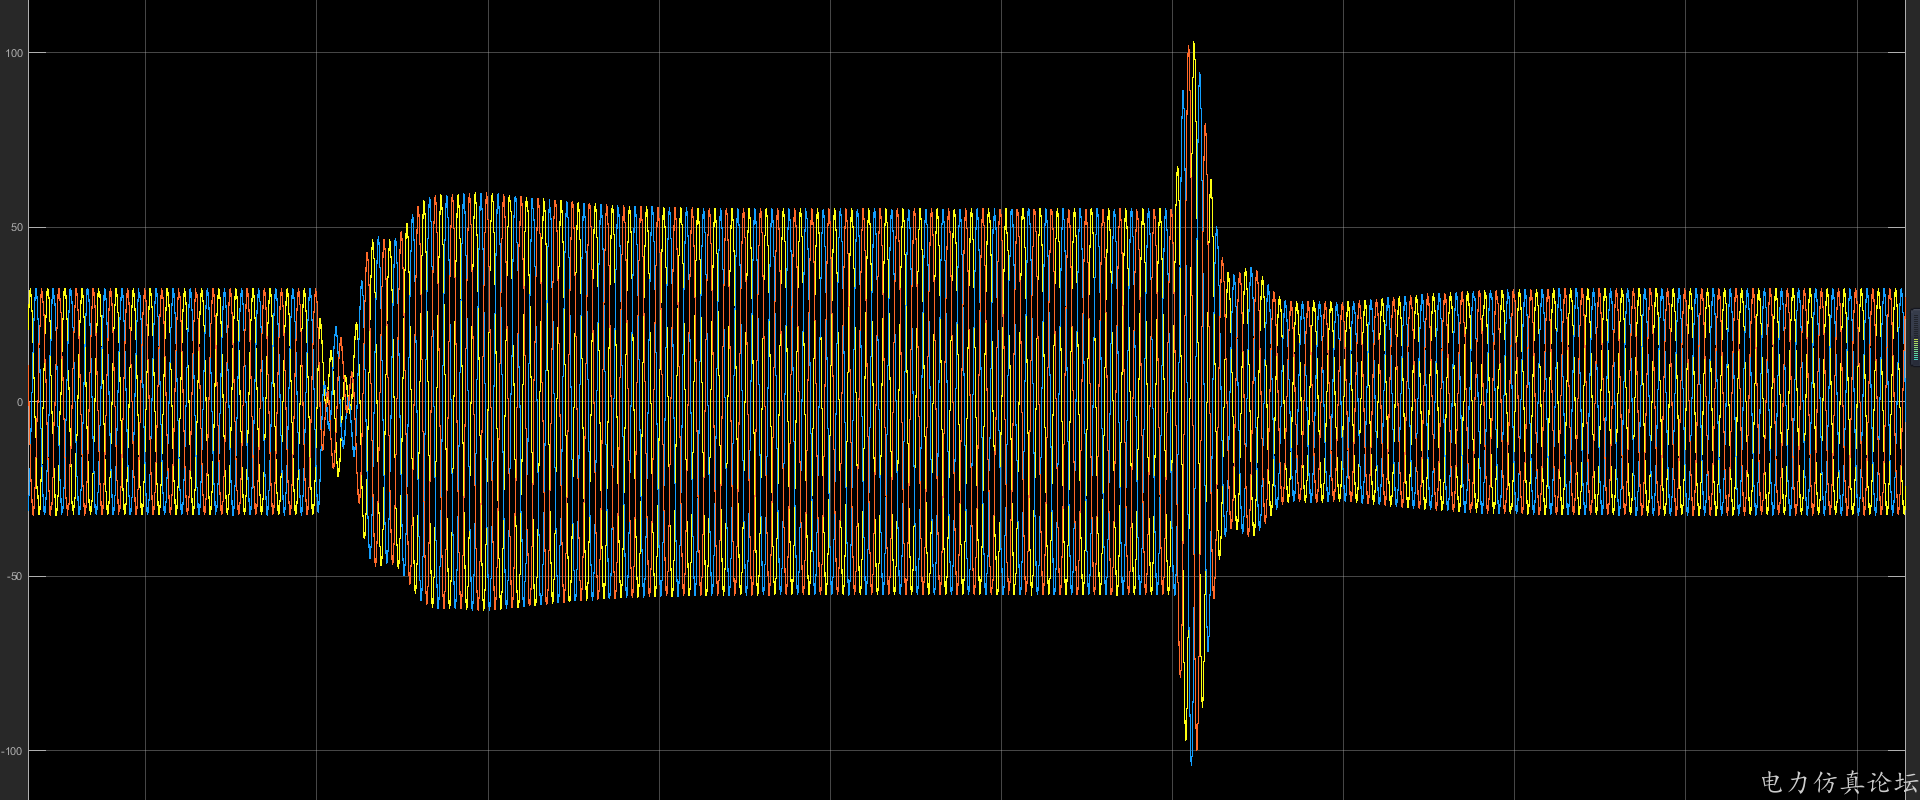 这是加PI控制器的波形